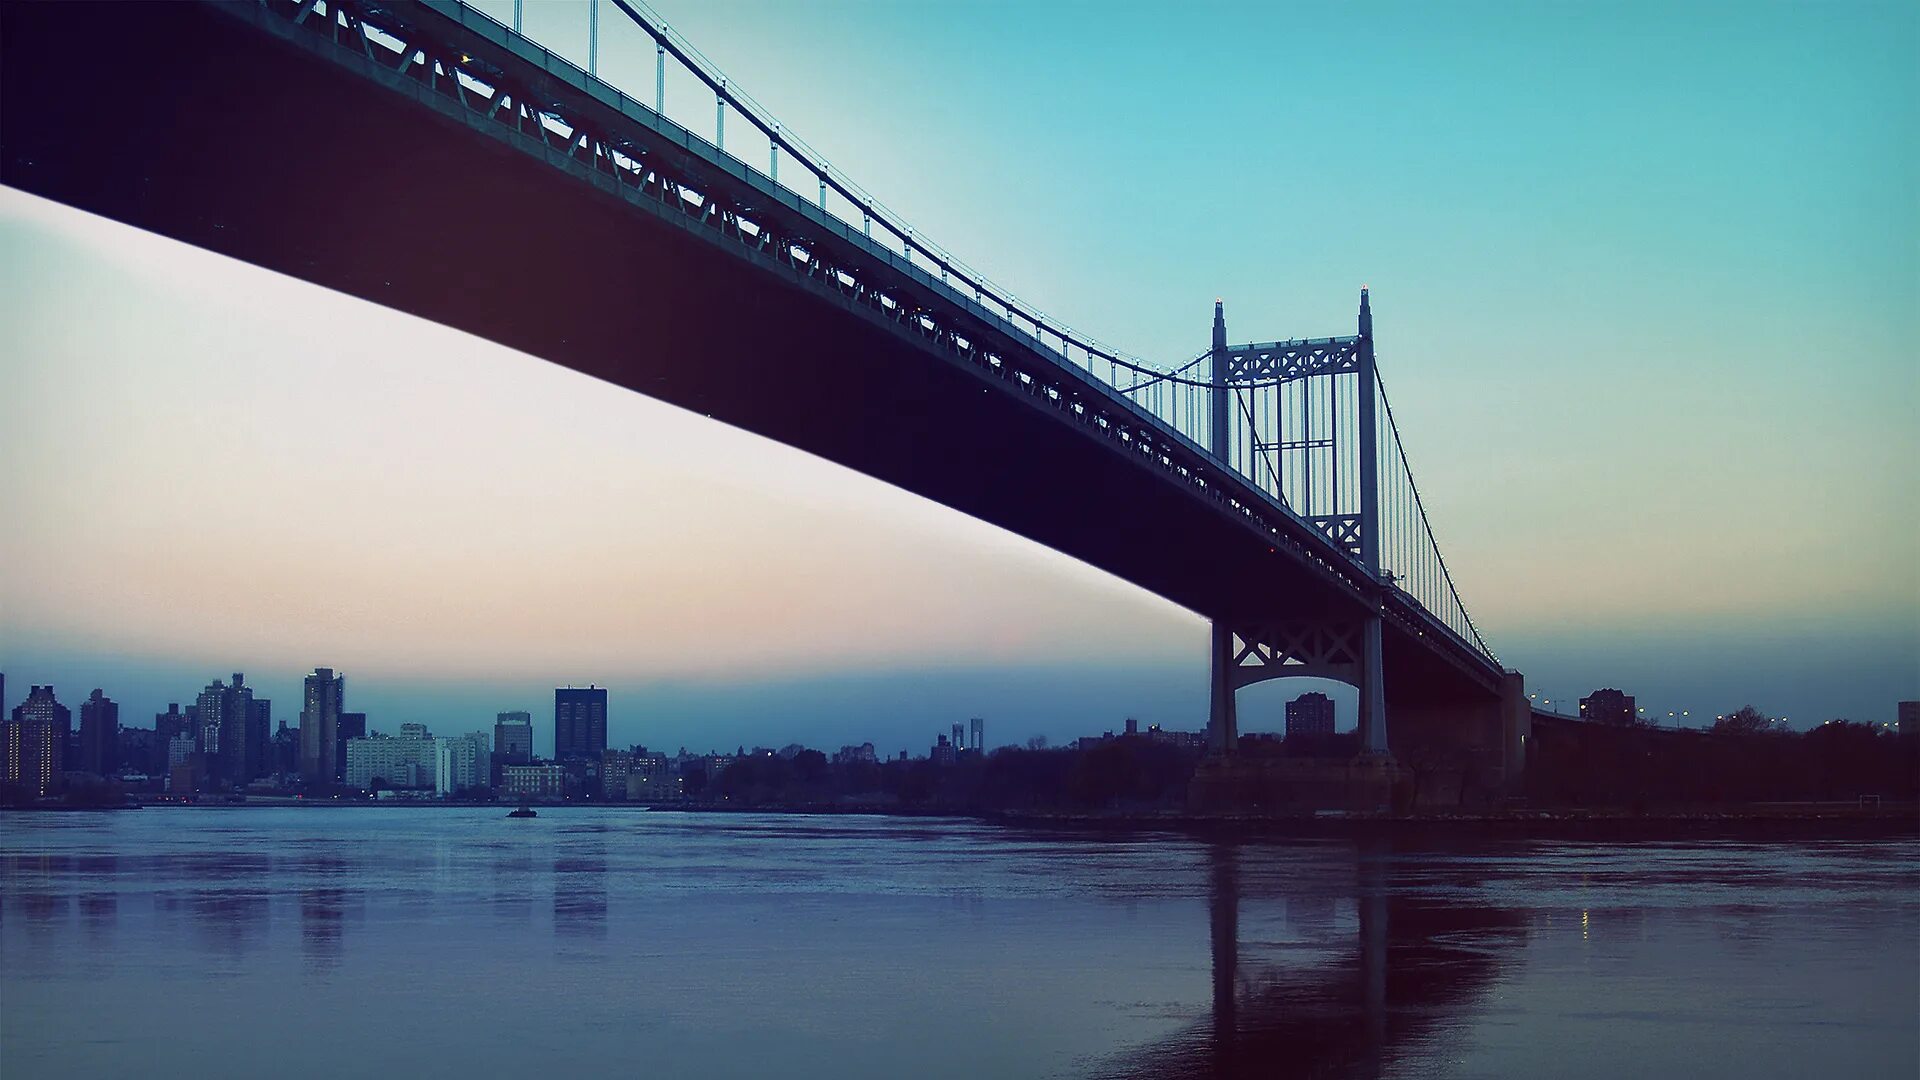 1400 x 900. Метромост Нью Йорк. Мост Верразано в Нью-Йорке. Мост Лонгфелло Массачусетс. Пейзаж с мостом.